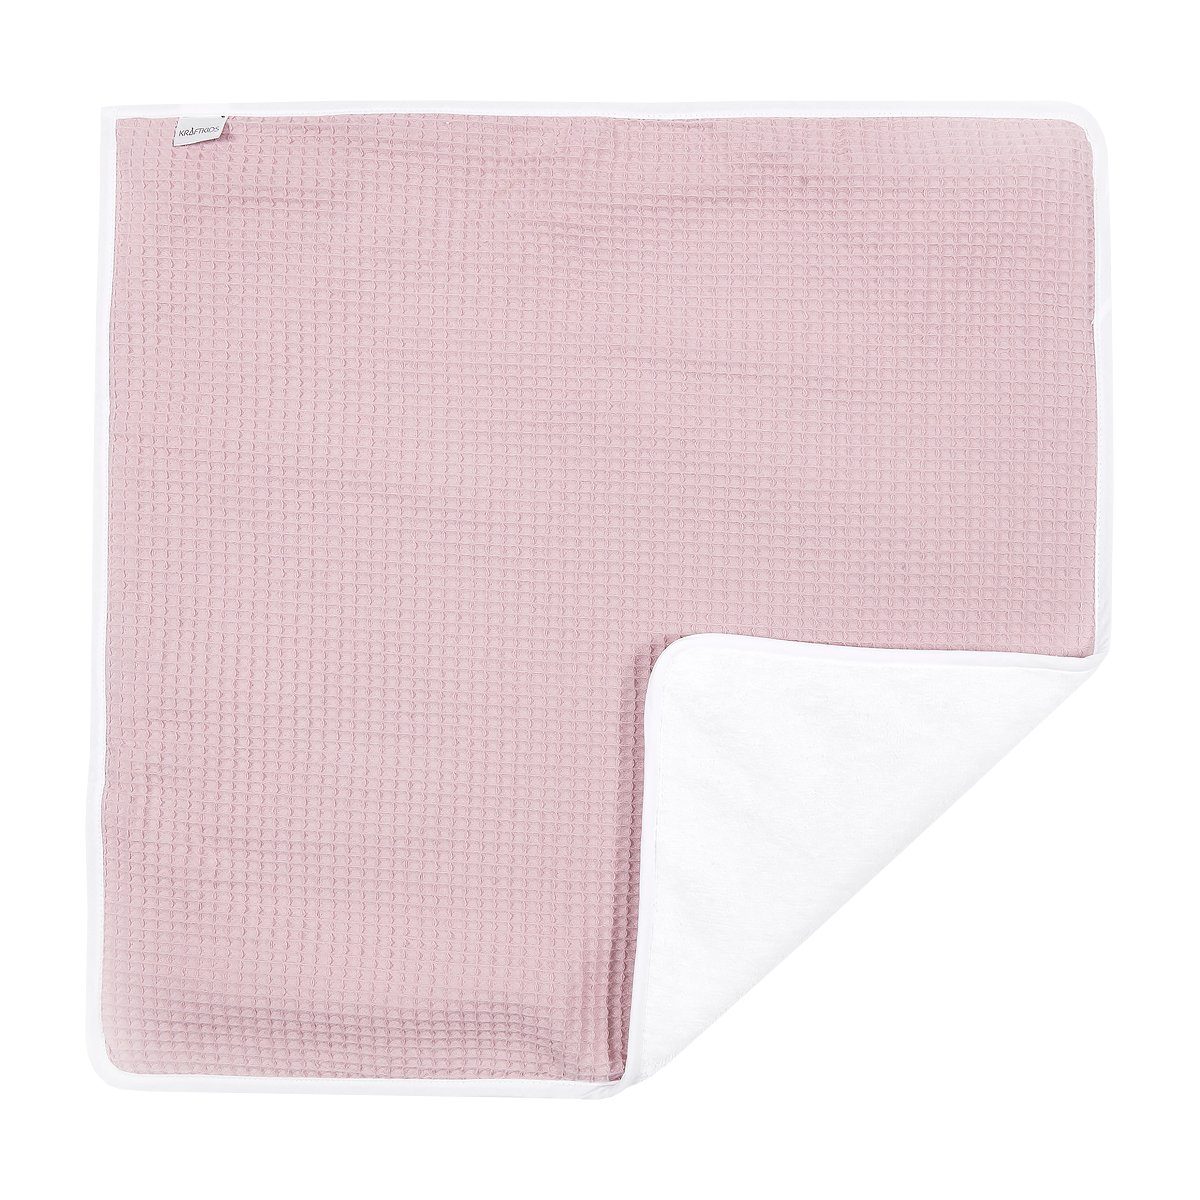 KraftKids Wickelauflage Waffel Piqué rosa, Wickelunterlage aus 3 Stoffsichten 100% Baumwolle, Innen wasserundurchlässig, faltbar auch für Unterwegs | Wickelauflagen